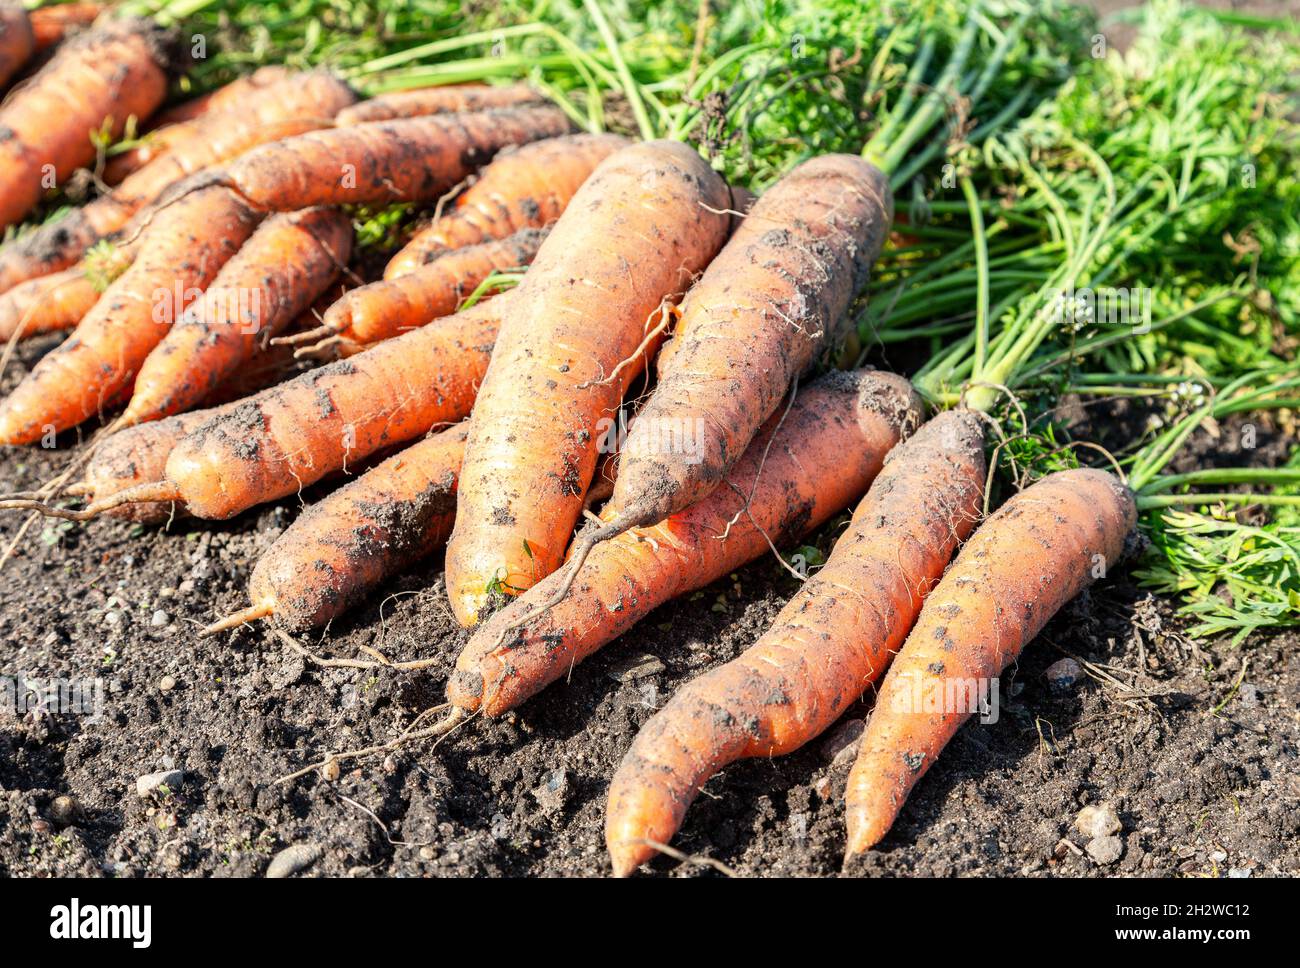 Frisch gegrabene Karotten mit Tops, die auf dem Gartenboden trocknen. Große Bio-saftige ungewaschene Karotten auf einem Feld auf dem Boden in Nahaufnahme Stockfoto